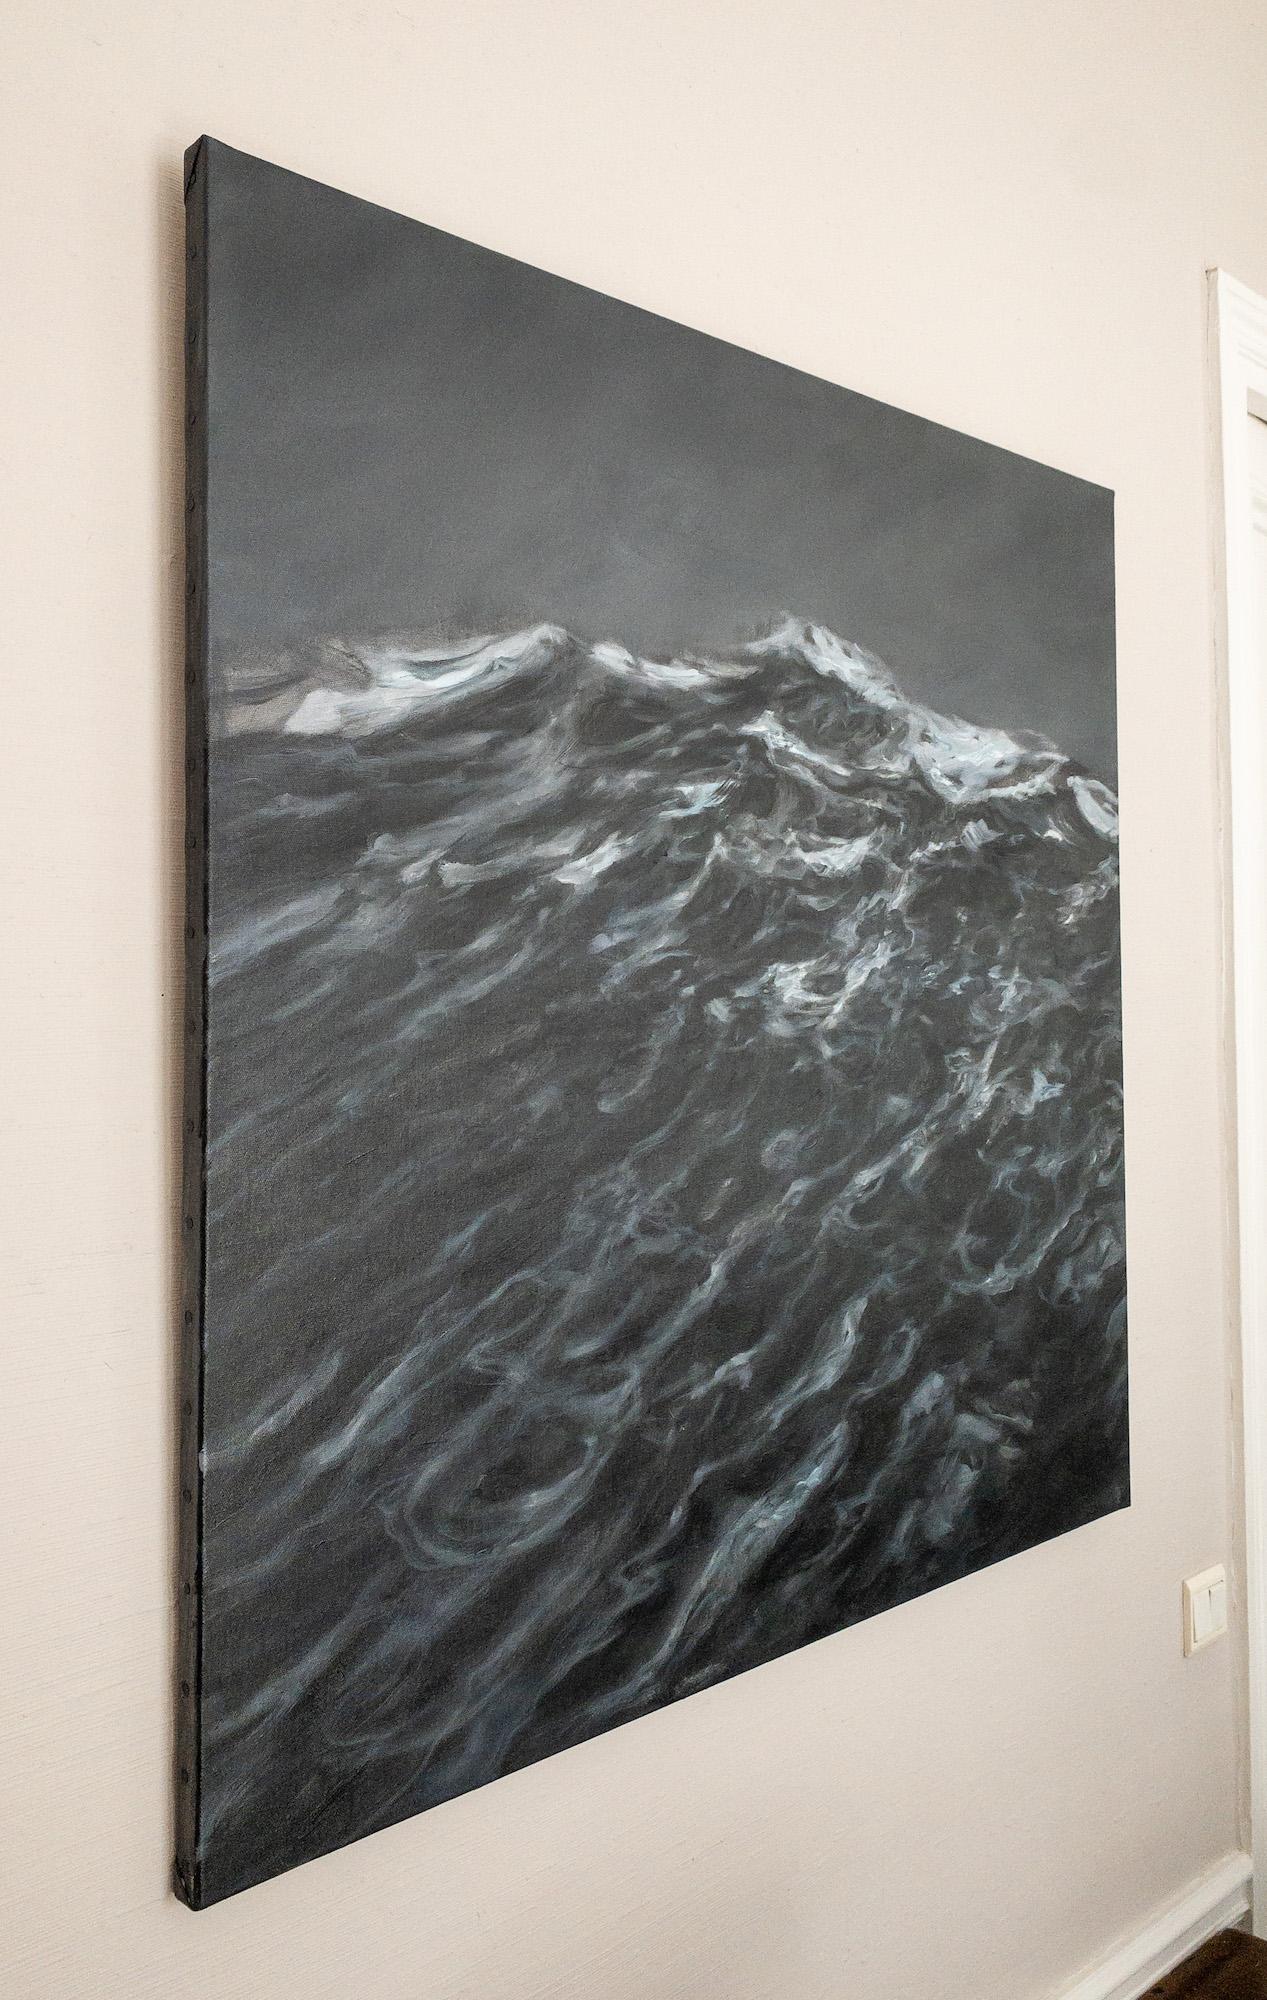 The Outburst by Franco Salas Borquez - Contemporary oil painting, seascape, wave For Sale 4